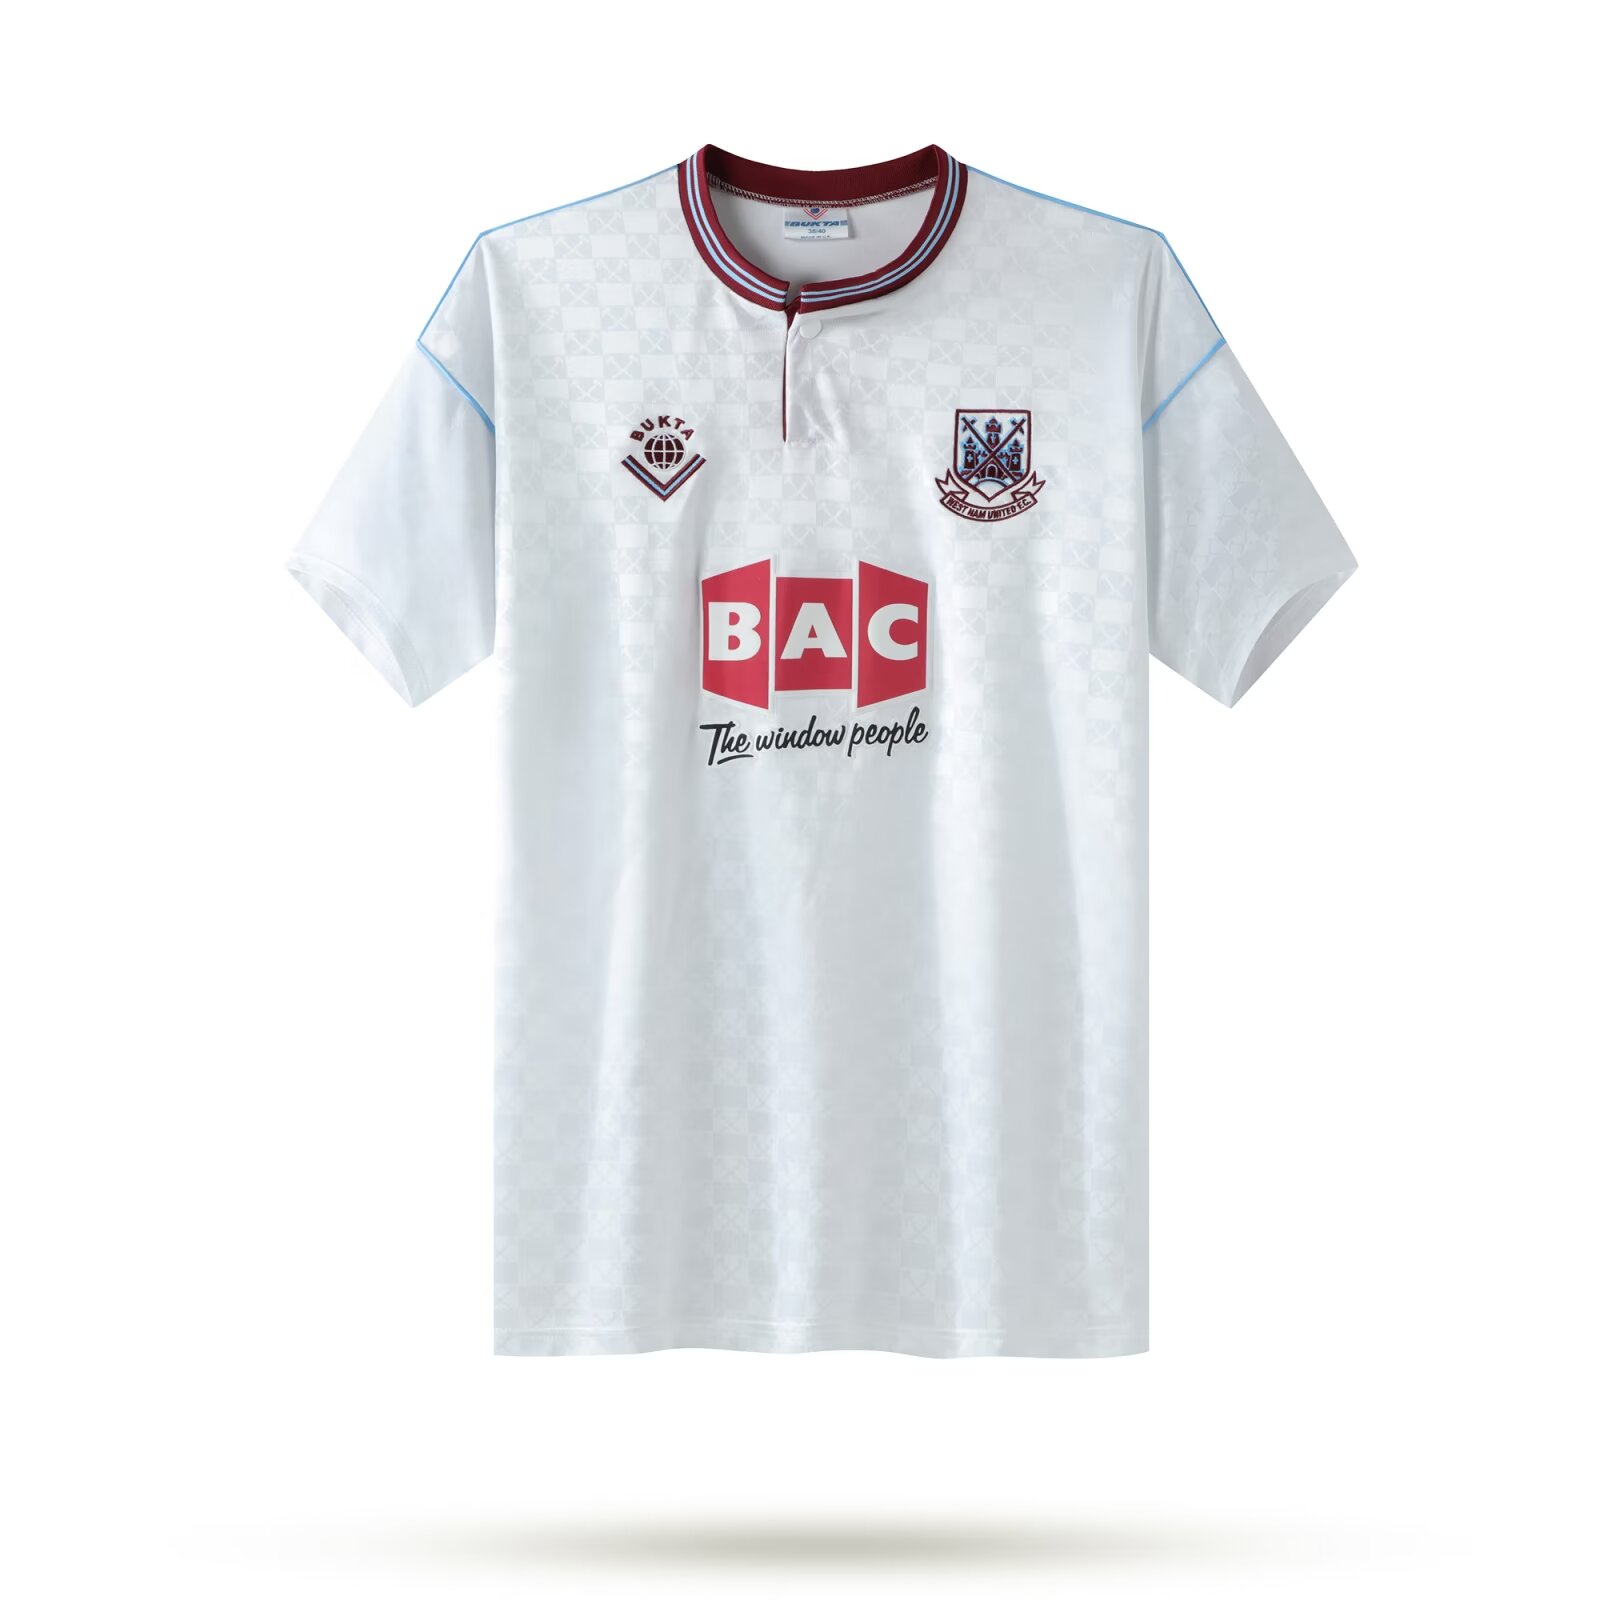 1989-1990 West Ham United retro